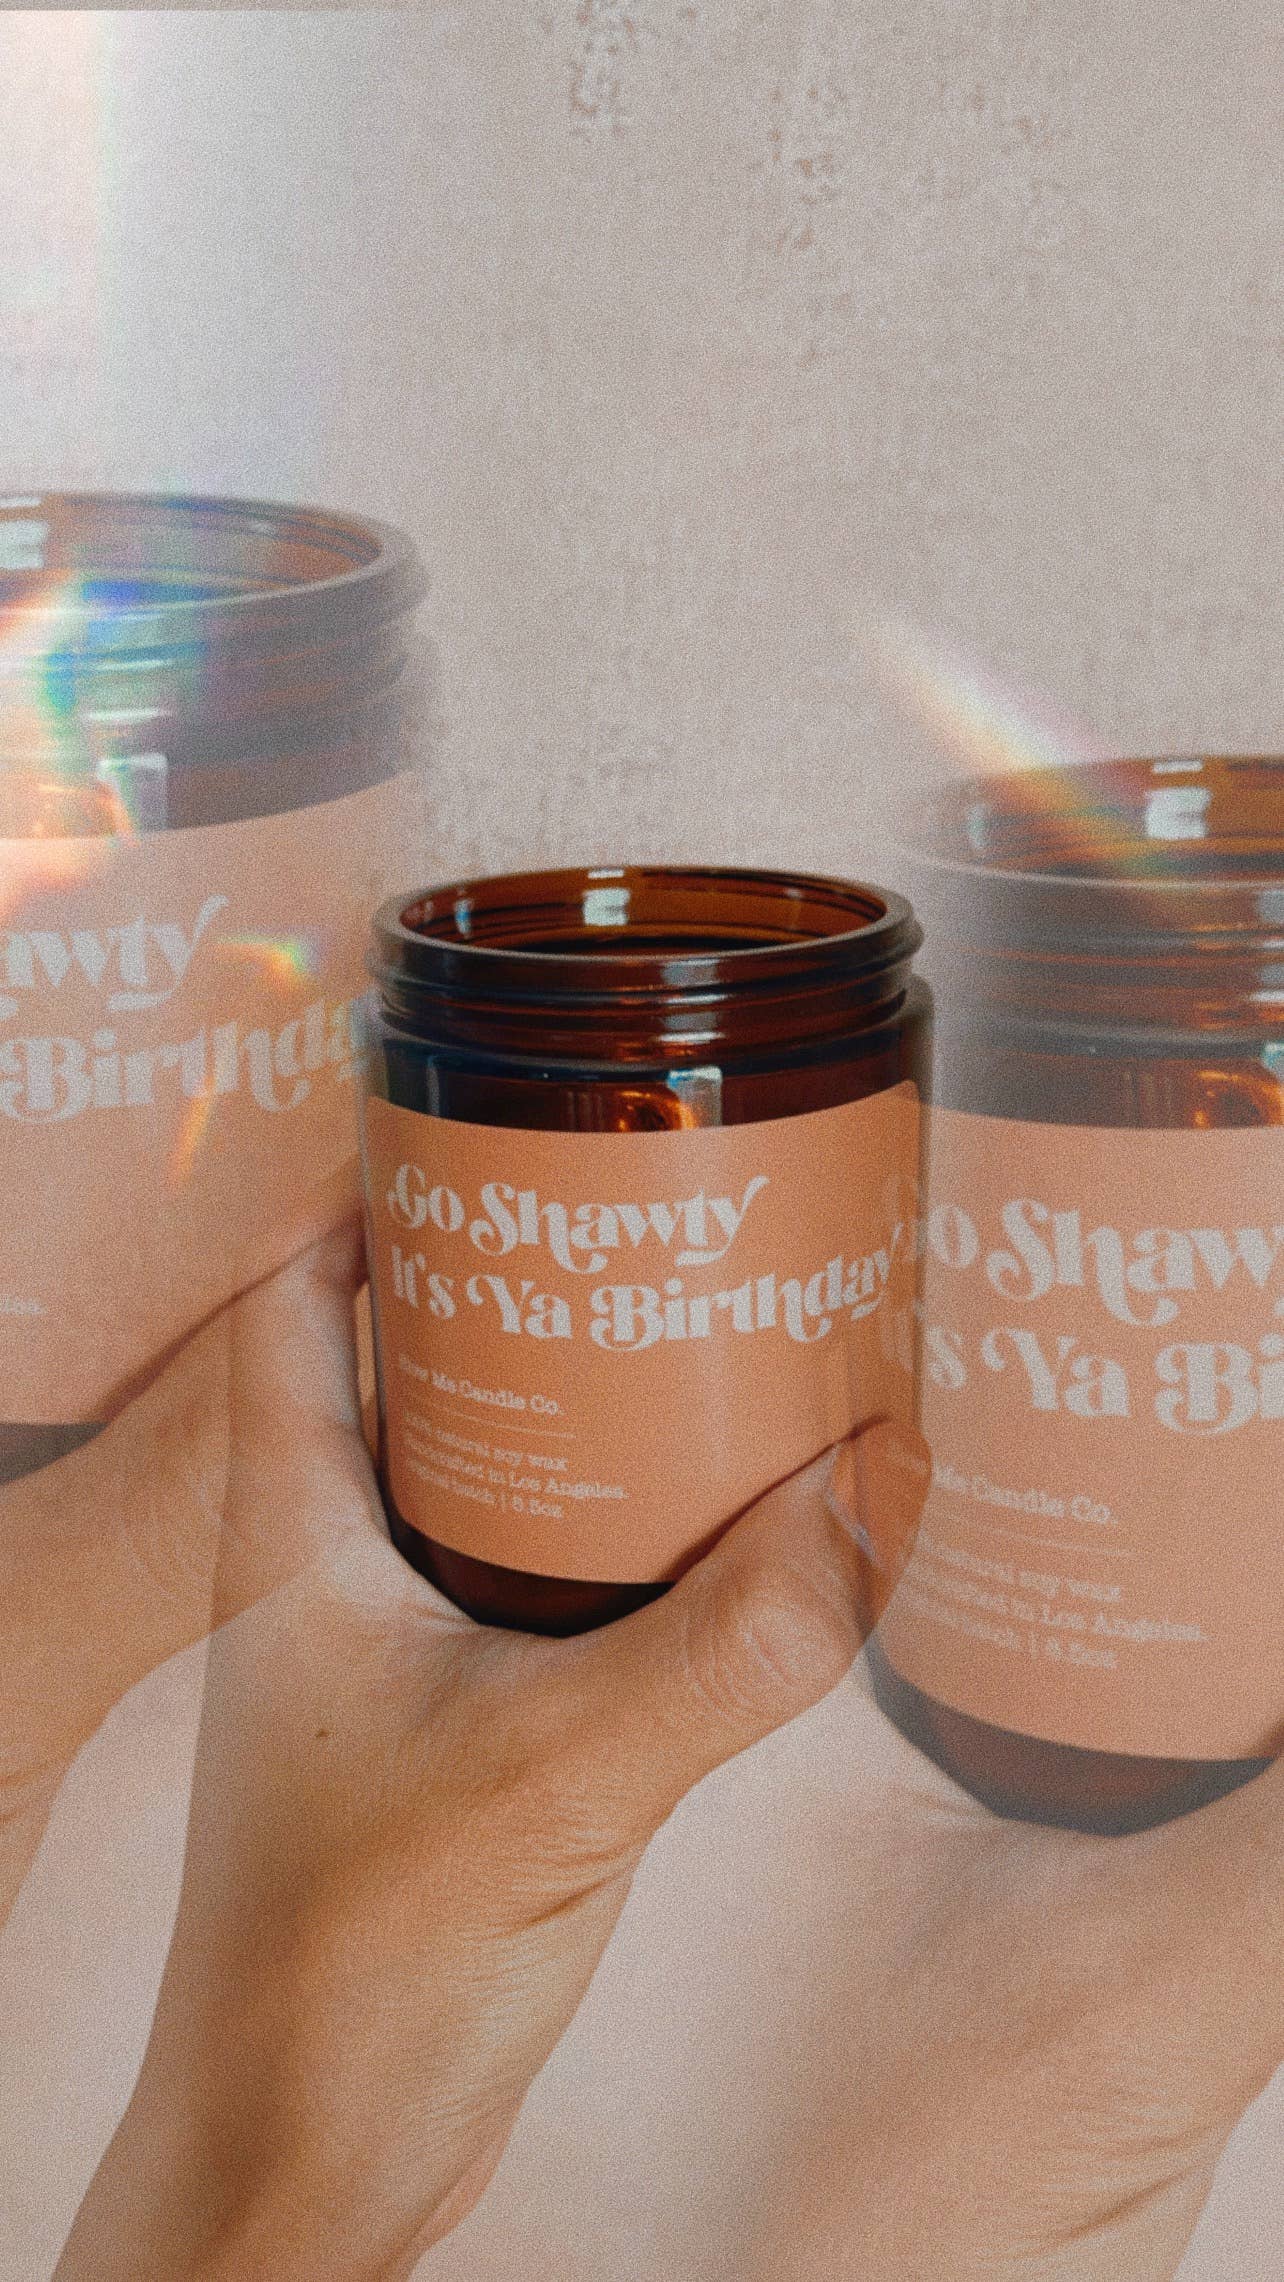 Candle: Go Shawty It’s Yo Birthday